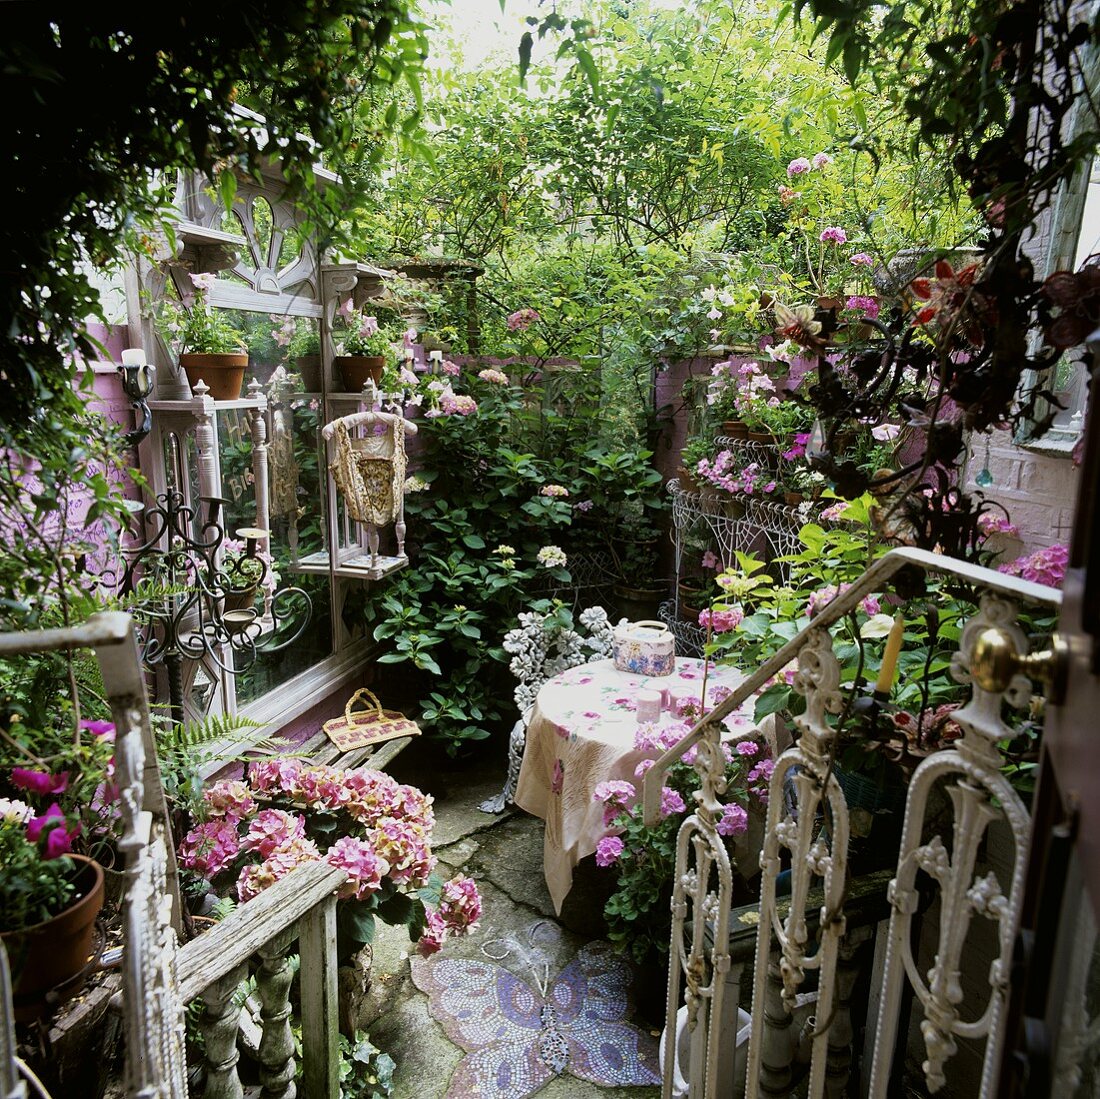 Blick auf weisses Metall Treppengeländer und romantischen Hinterhof mit Terrassentisch zwischen Grünpflanzen